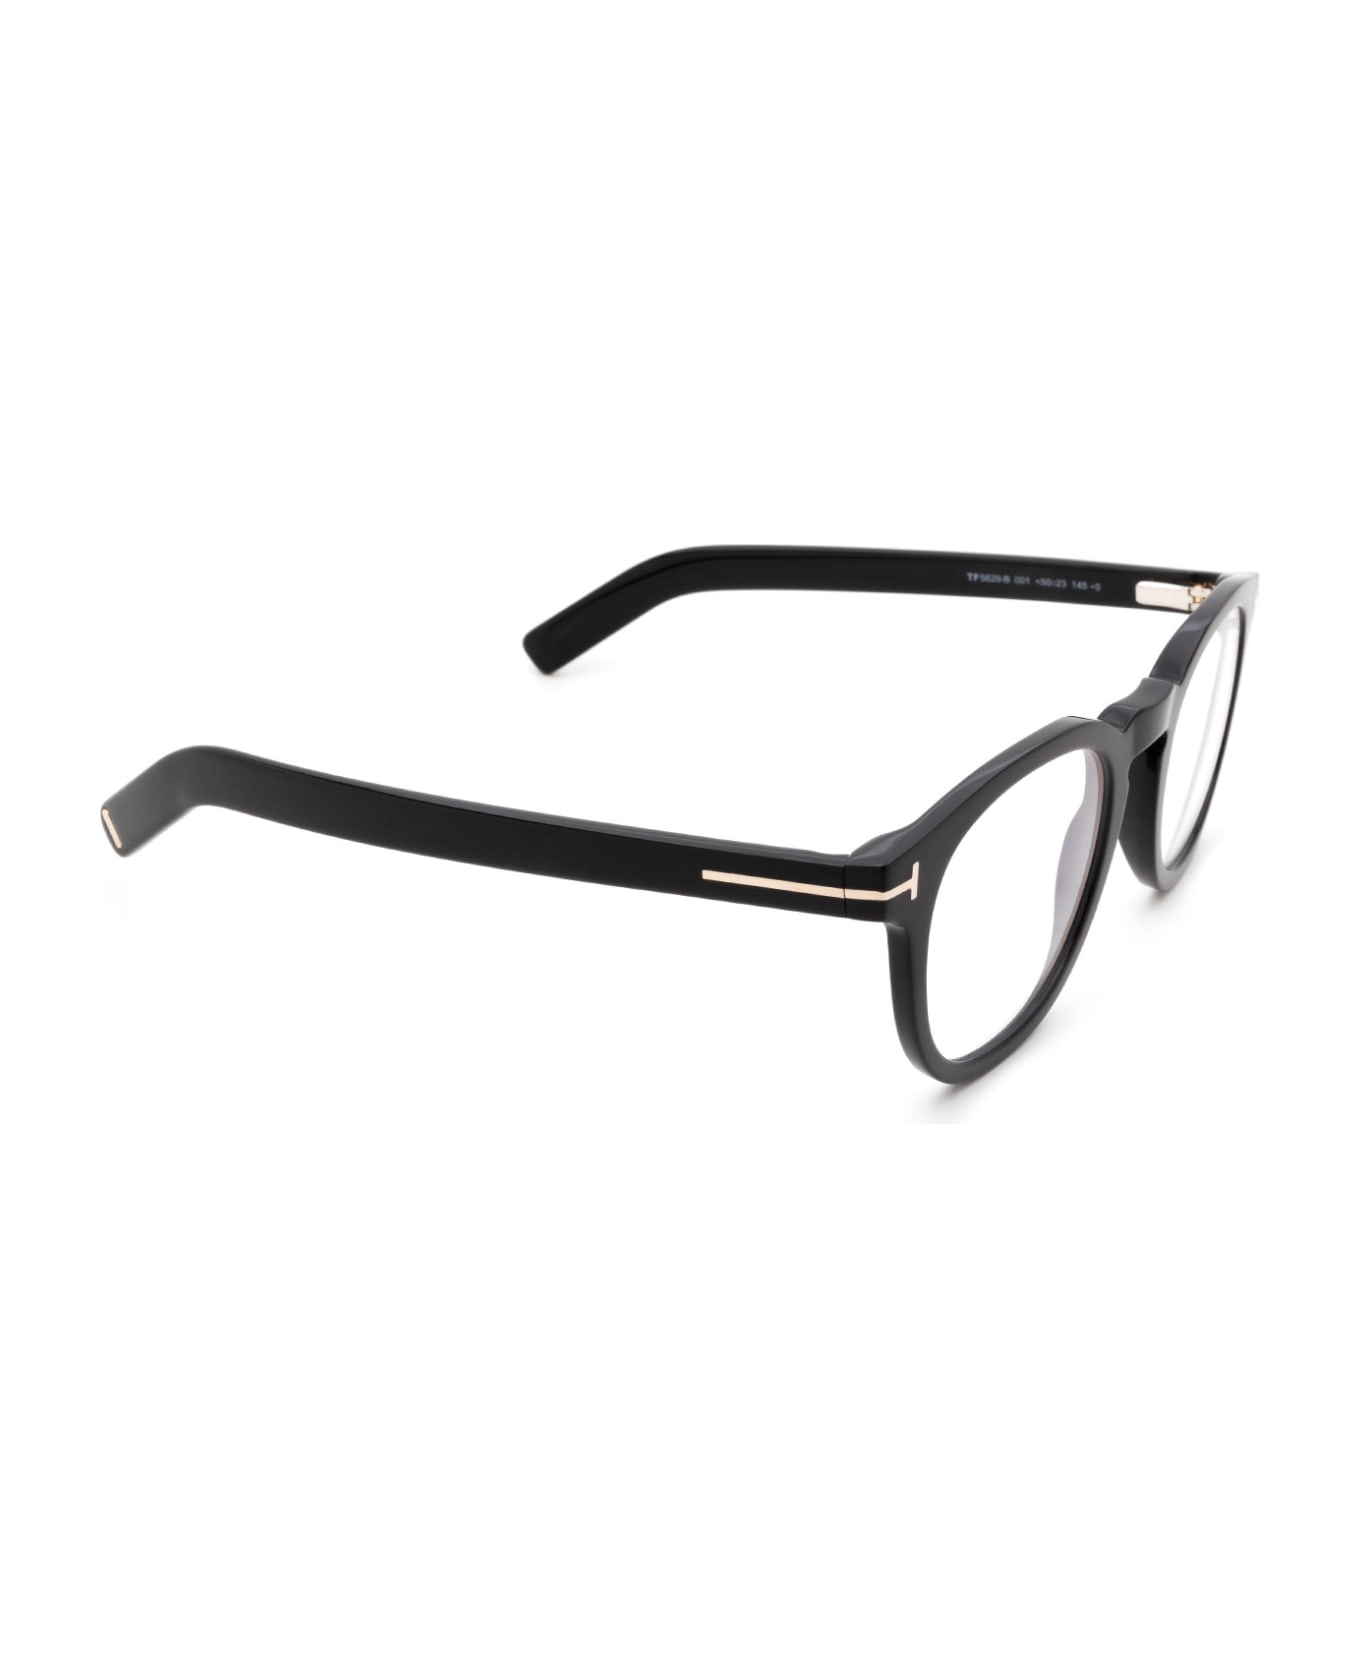 Tom Ford Eyewear Ft5629-b Shiny Black Glasses - Shiny Black